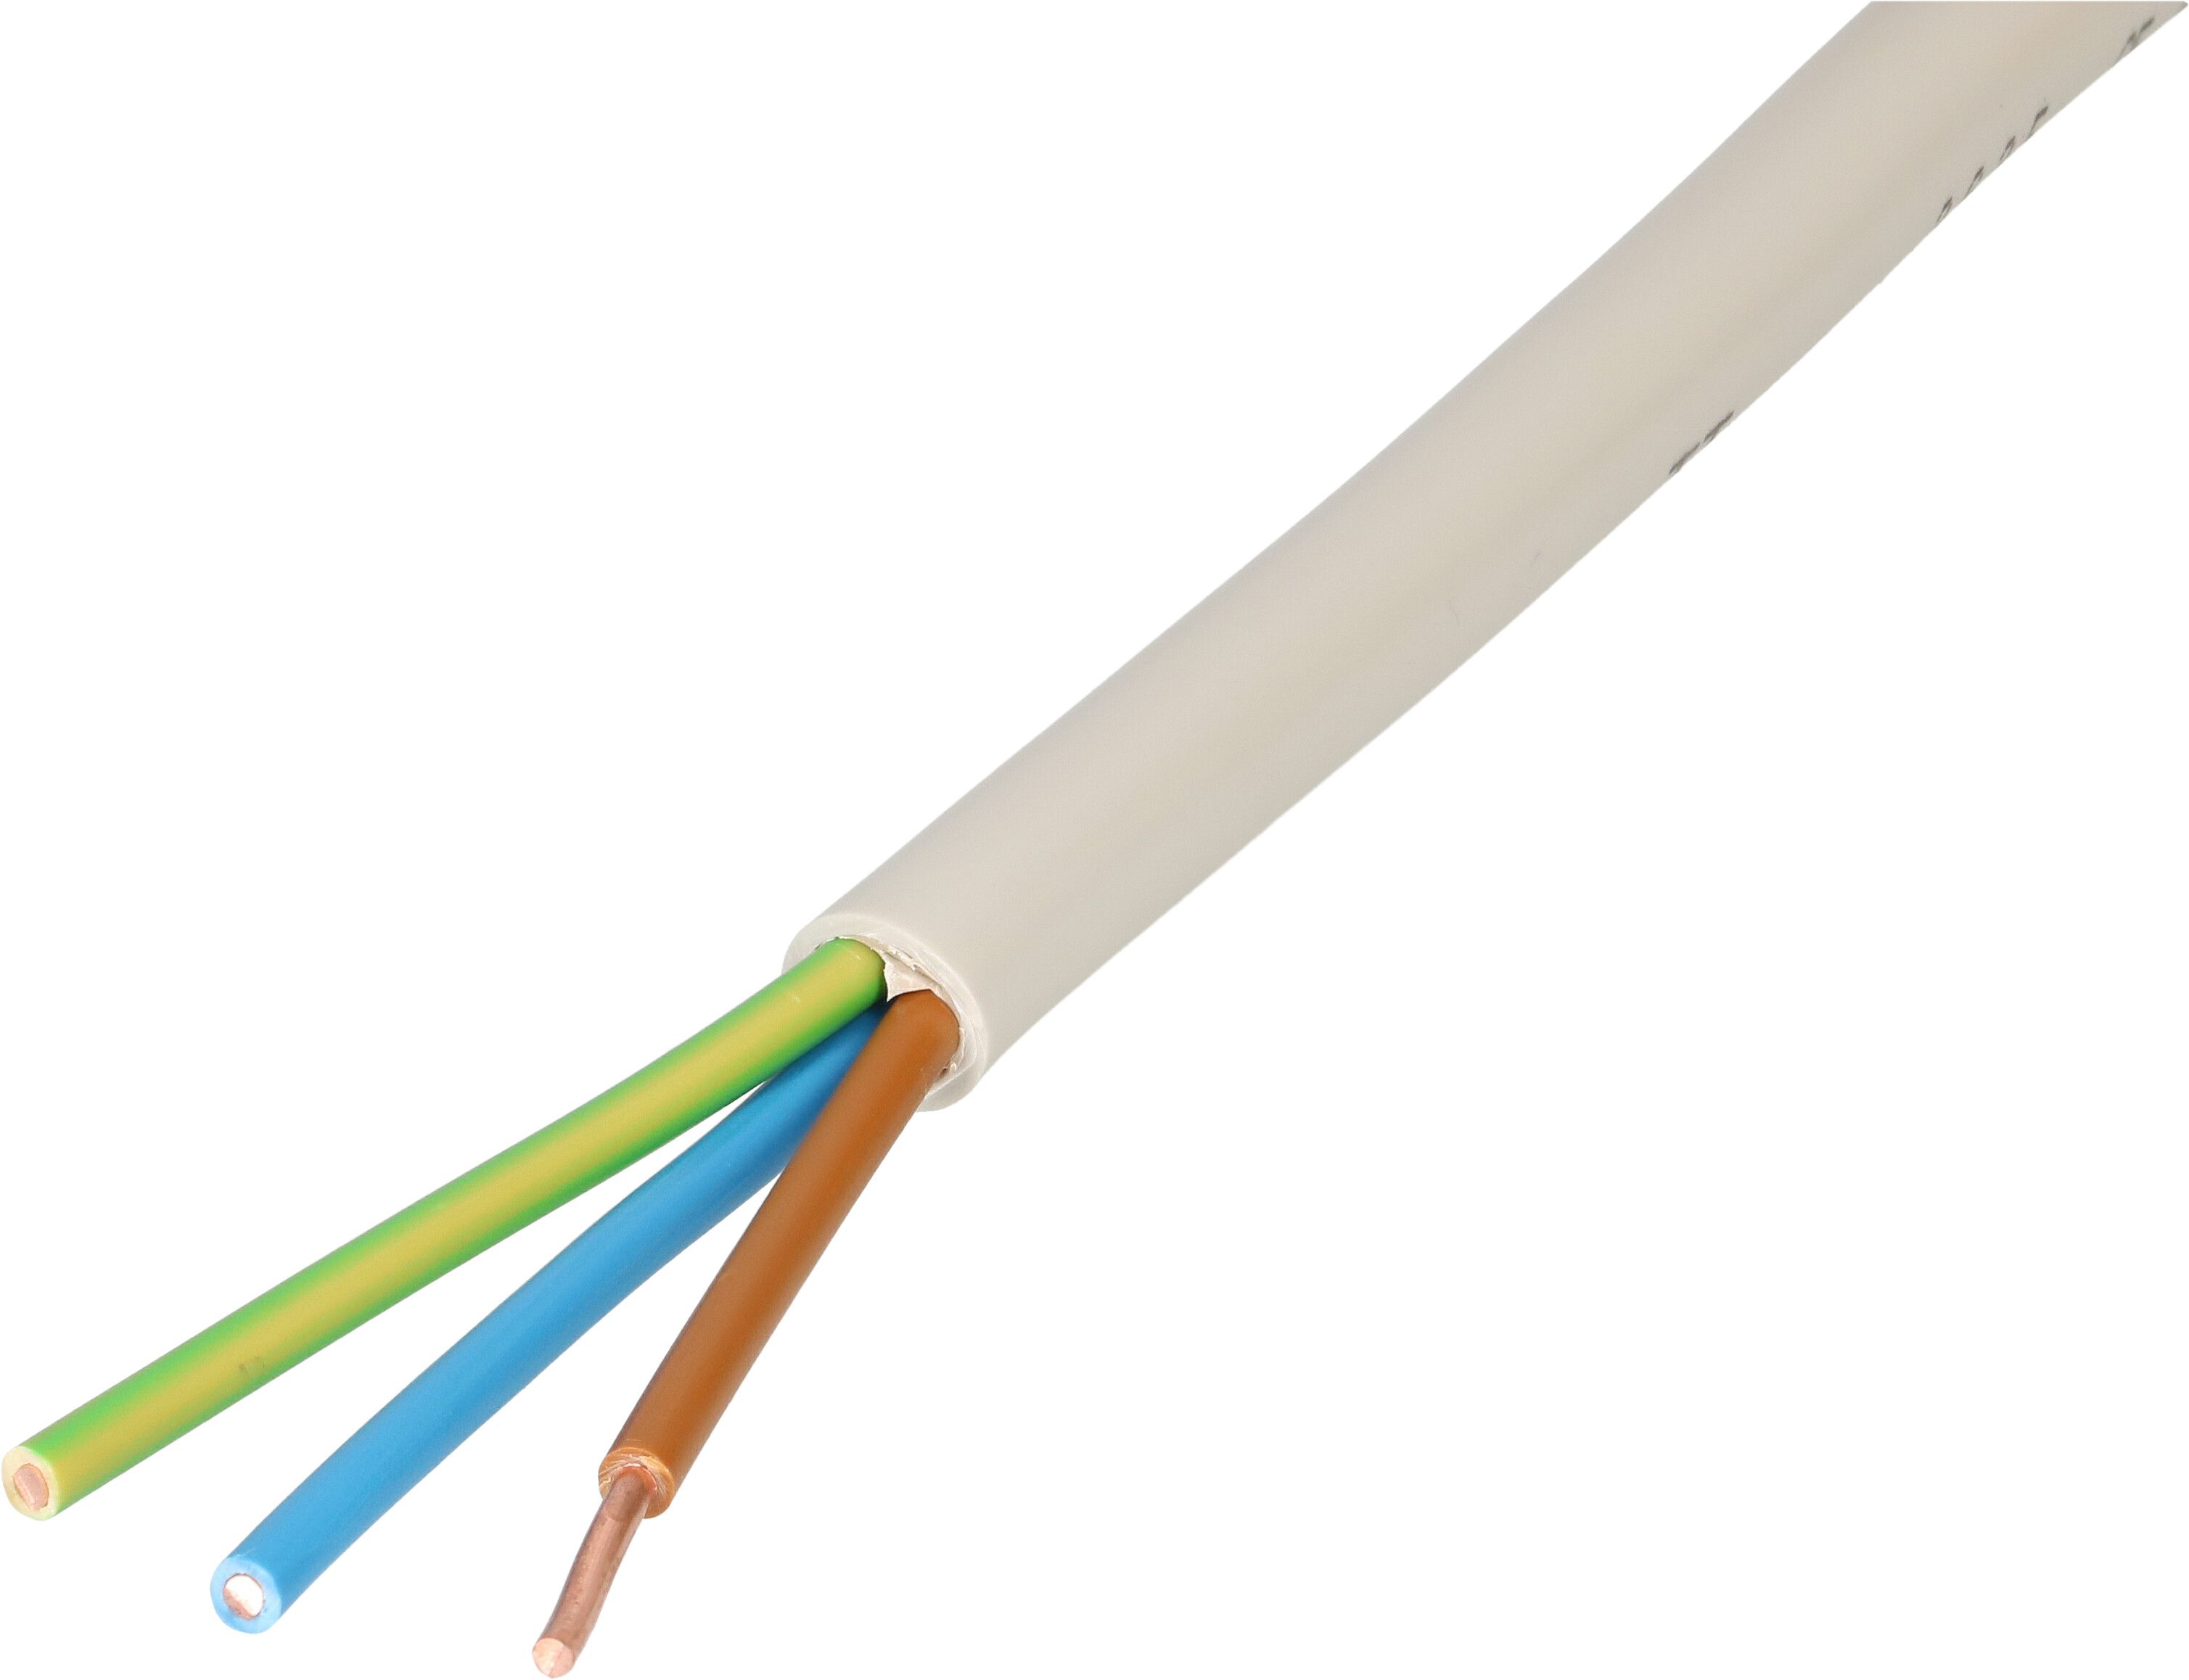 Kabel TT 3x1,5mm2 grau L=50m - MAX HAURI AG